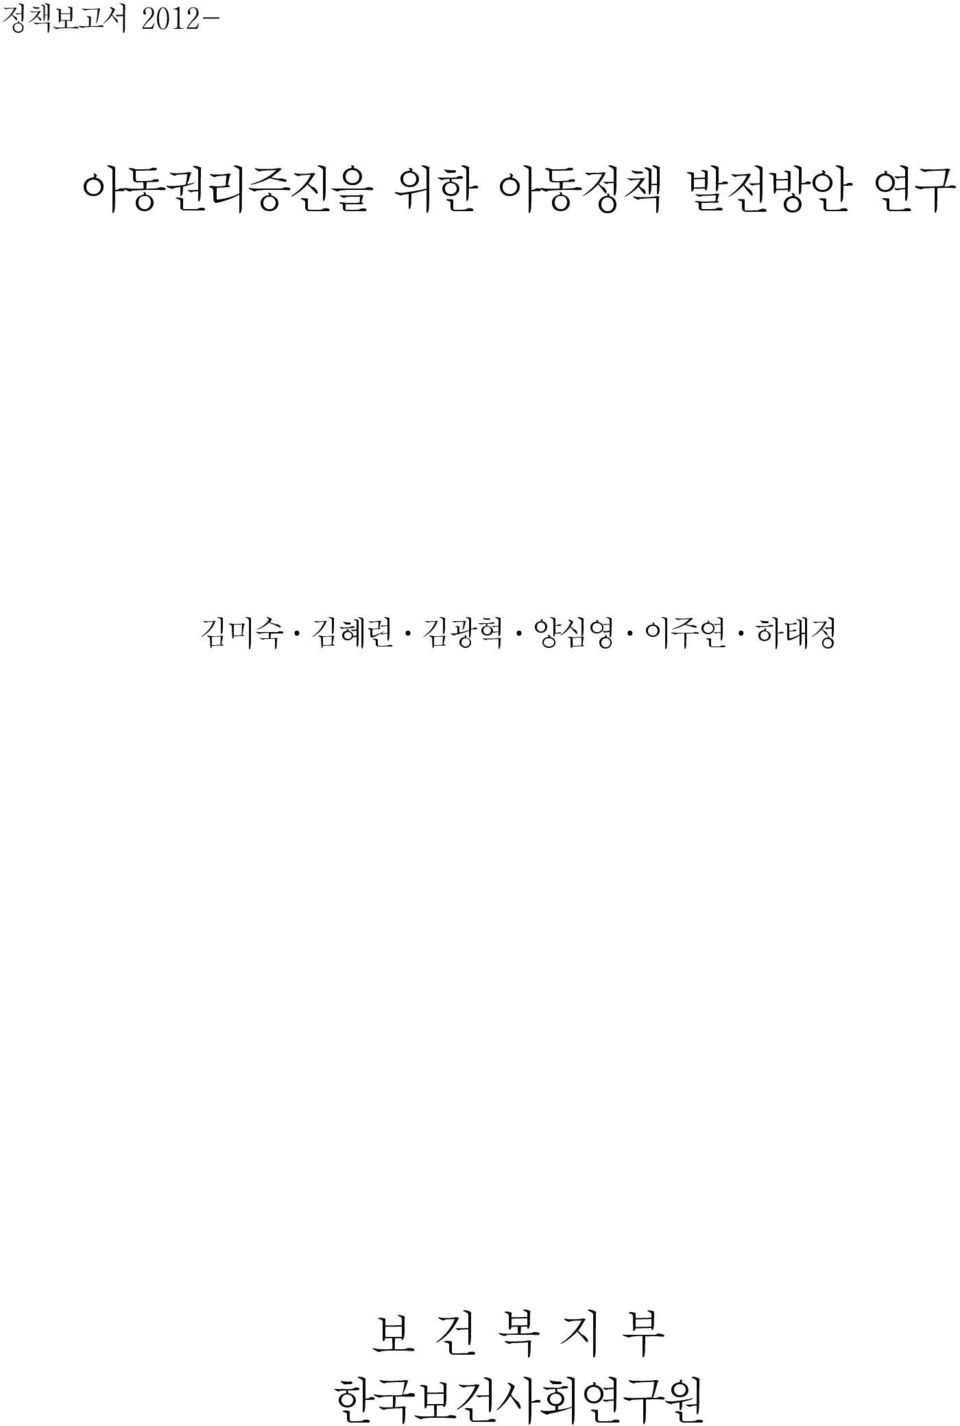 김혜련 김광혁 양심영 이주연 하태정